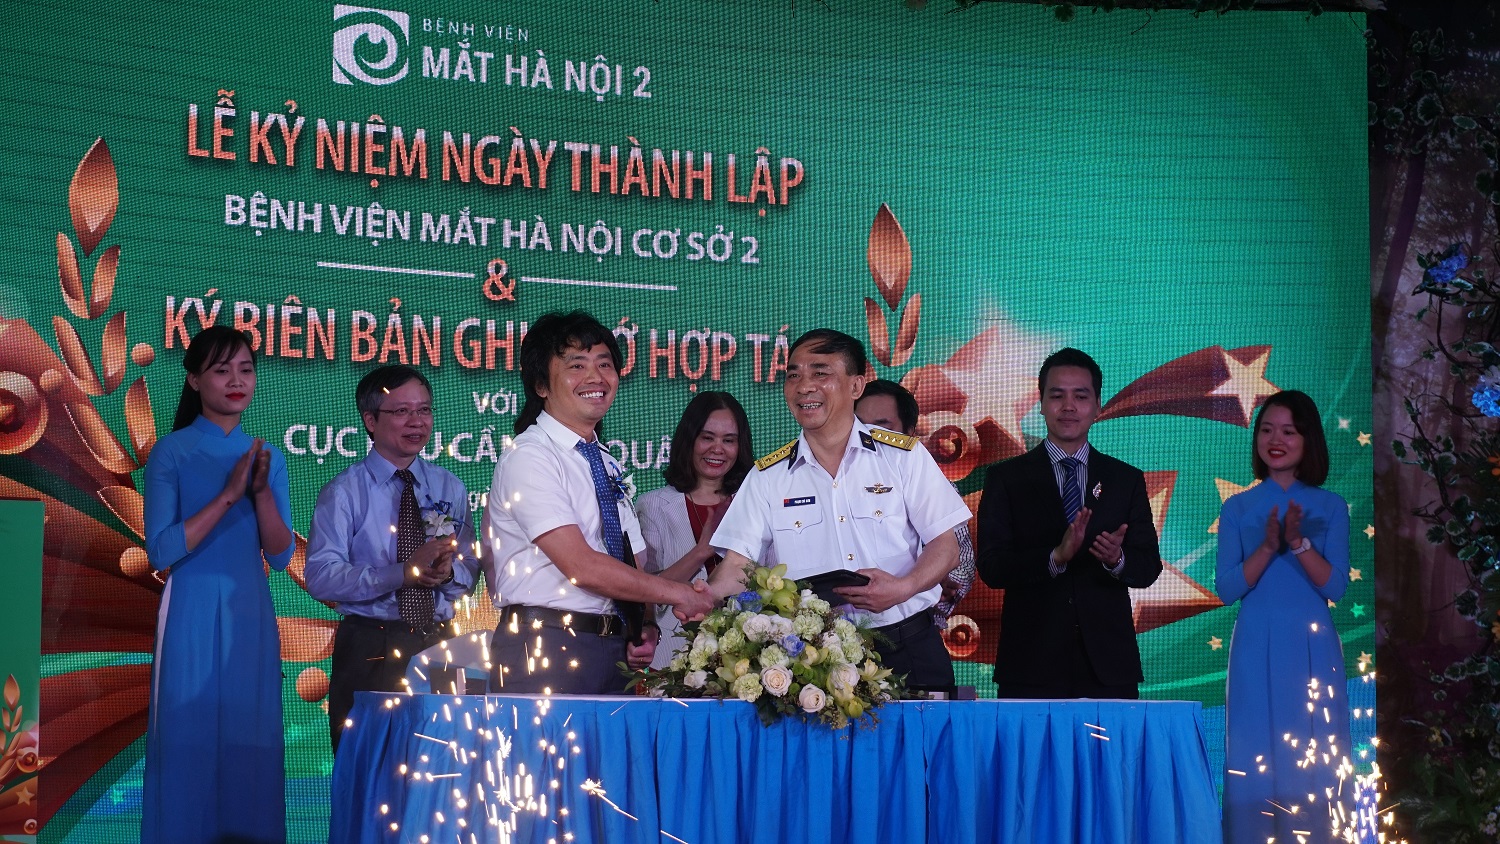 Đại diện Bệnh viện Mắt Hà Nội 2 và đại diện Cục Hậu cần, Quân Chủng Hải Quân Việt Nam ký biên bản ghi nhớ hợp tác trong khuôn khổ khám chữa bệnh cho các chiến sỹ